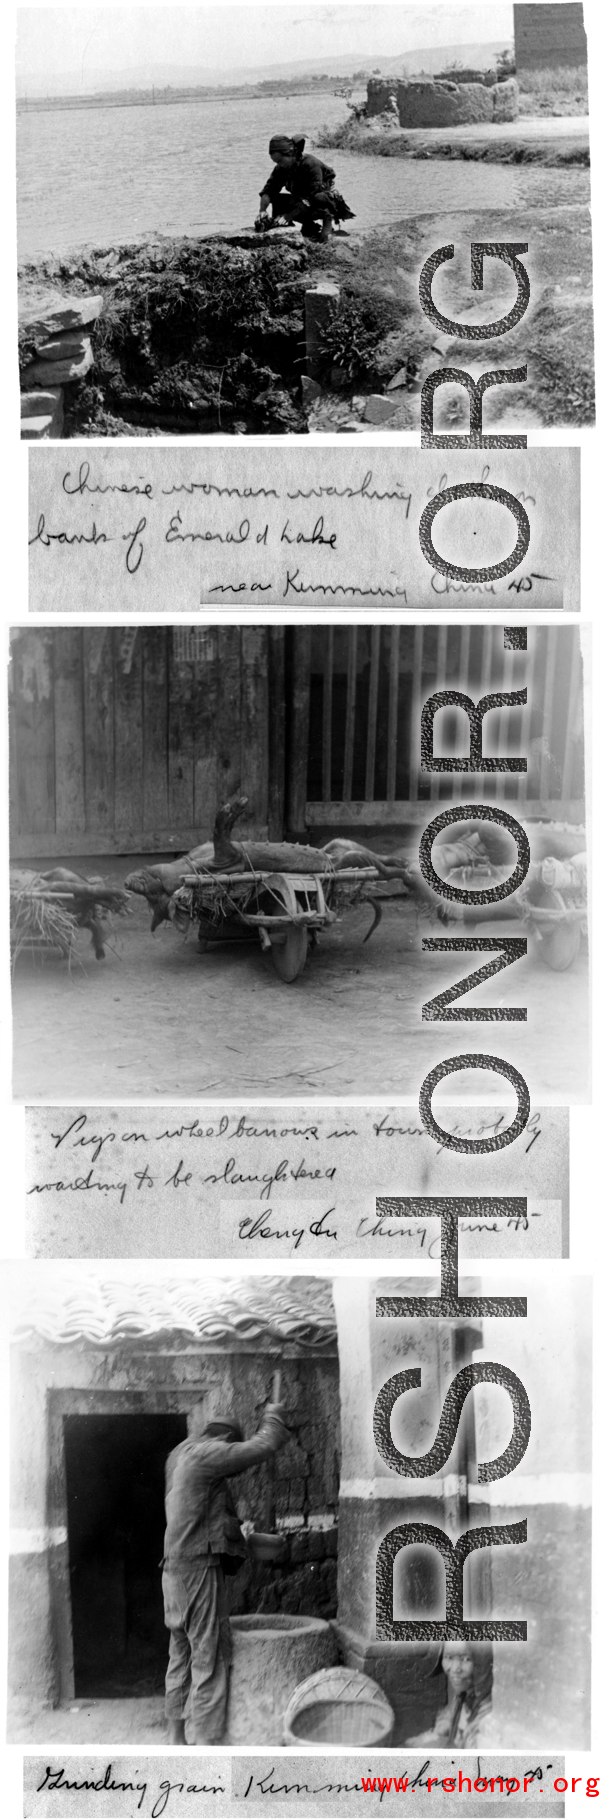 Vignettes of rural life near Kunming, 1945.